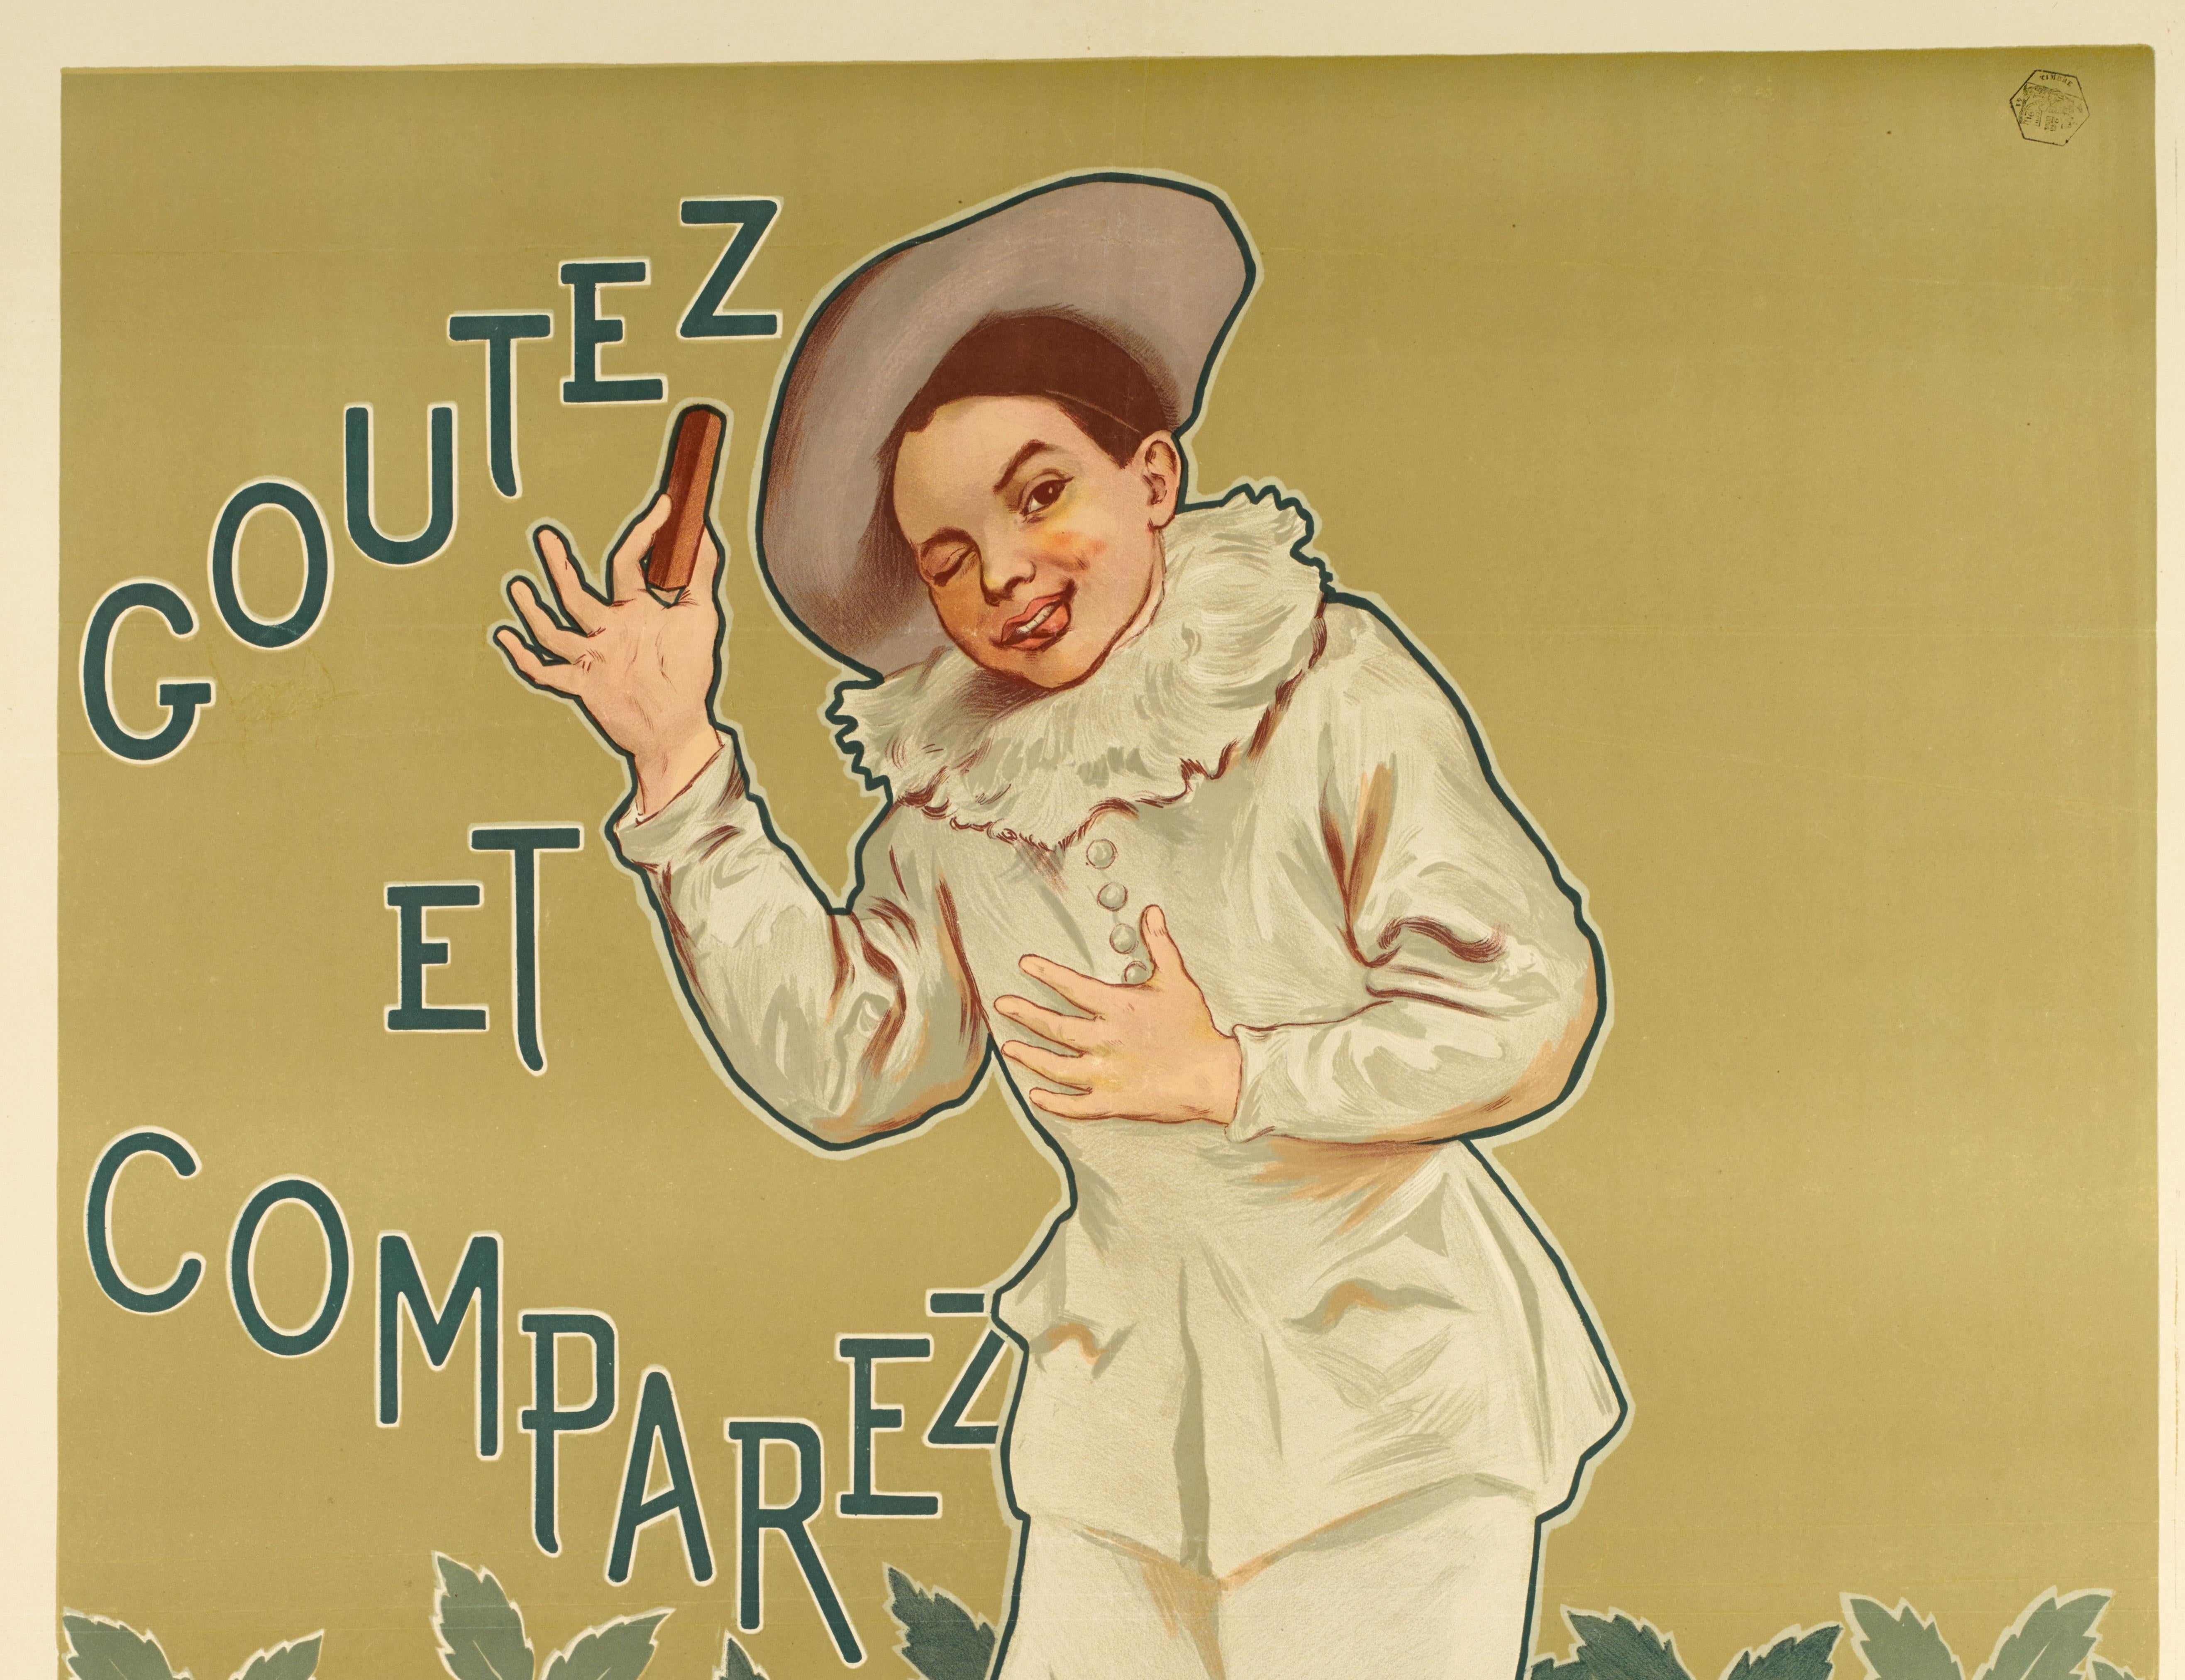 Affiche originale de Firmin Bouisset pour Chocolat Poulain en 1898.

Artistics : Firmin Bouisset (1859-1925)
Titre : Chocolat Poulain
Date : vers 1898
Taille : 36.6 x 50.8 in / 93 x 129 cm.
Imprimante : Imp. H.LAAS E. PECAUD & Cie,